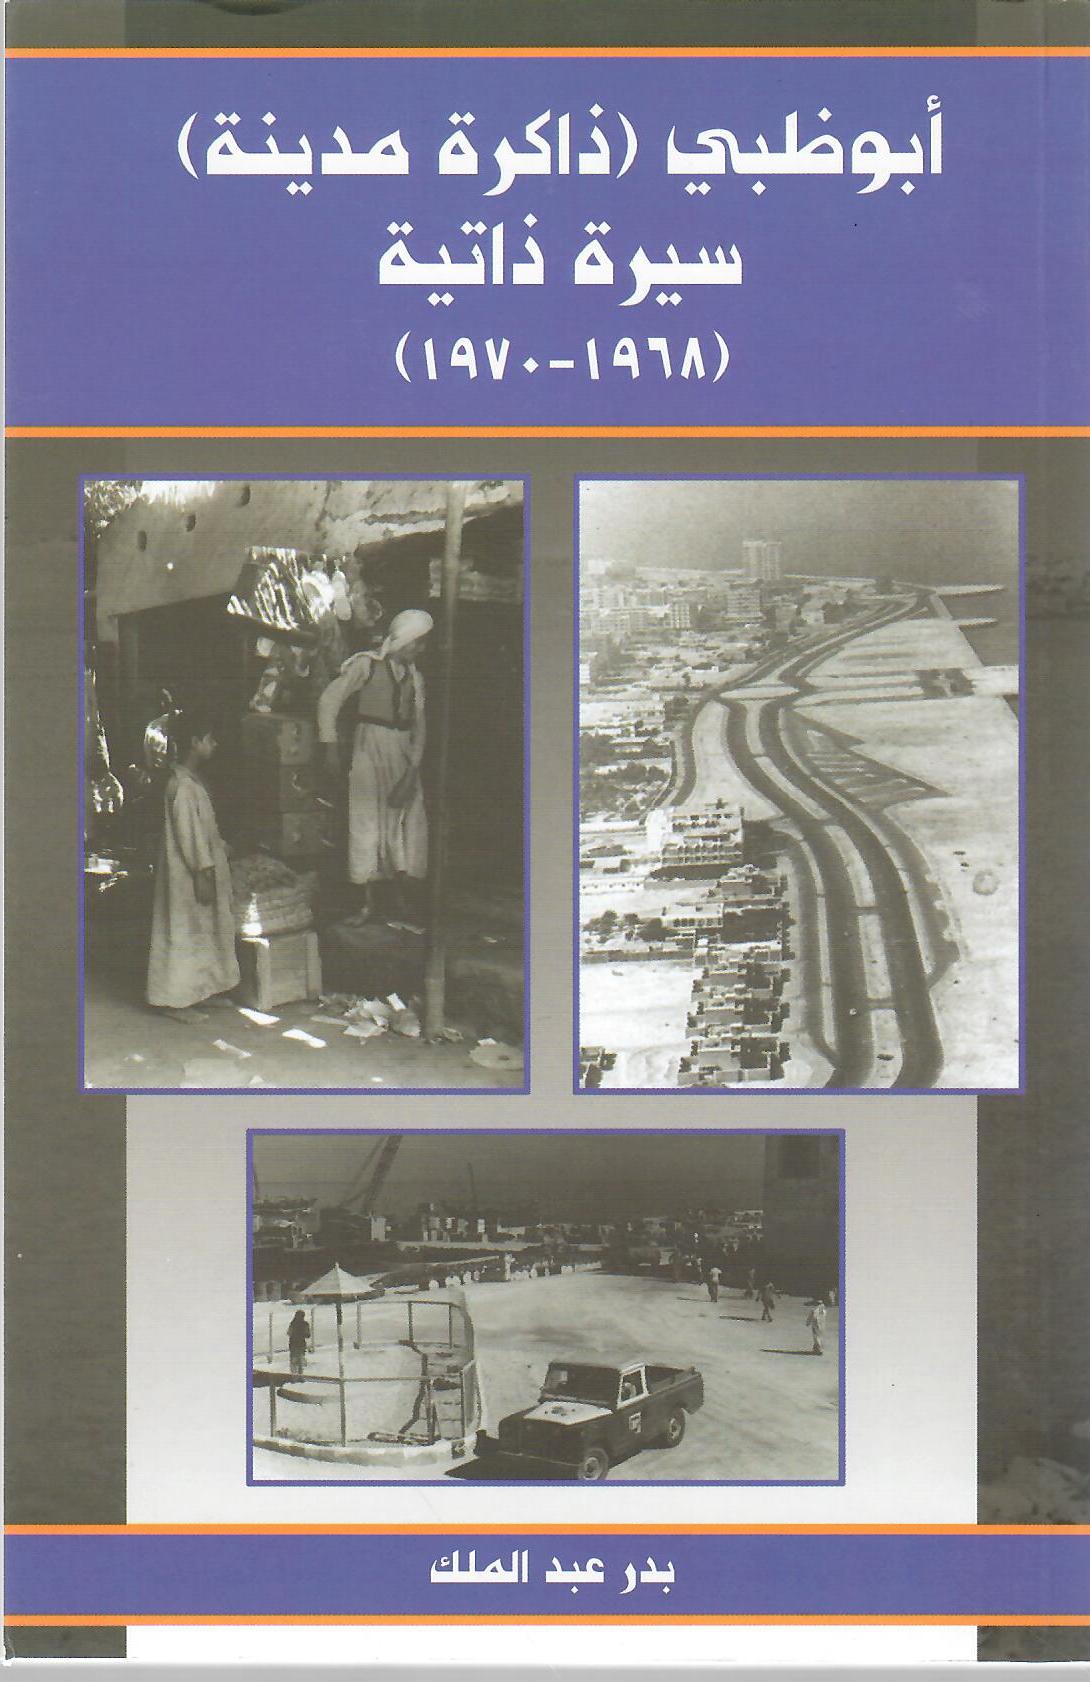 أبوظبي ( ذاكرة مدينة ) سيرة ذاتية ( 1968 - 1970 ) (